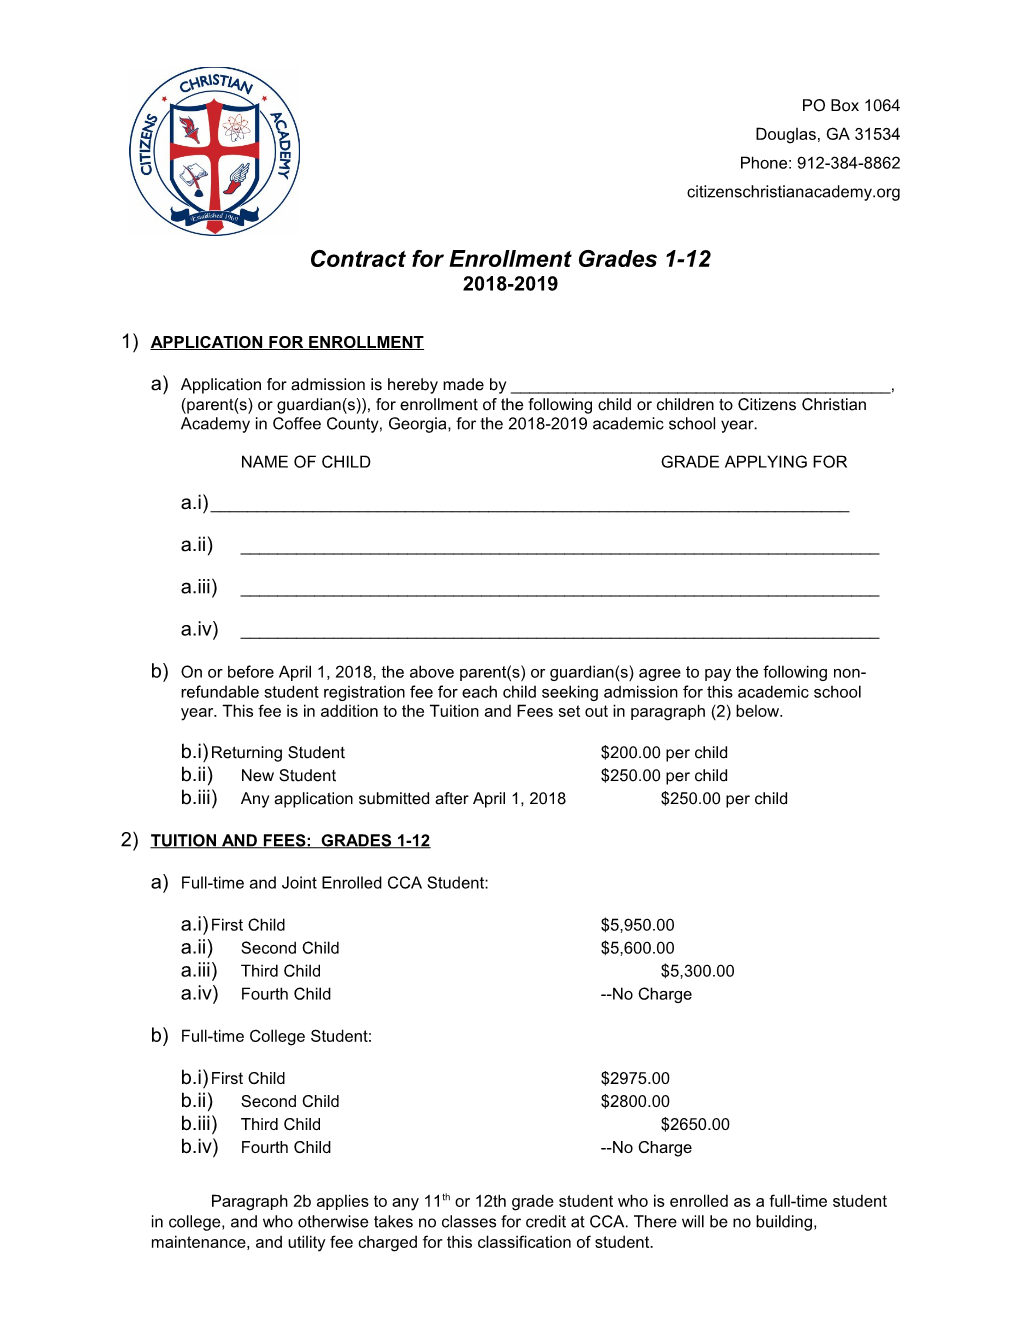 Contract for Enrollment Grades 1-12